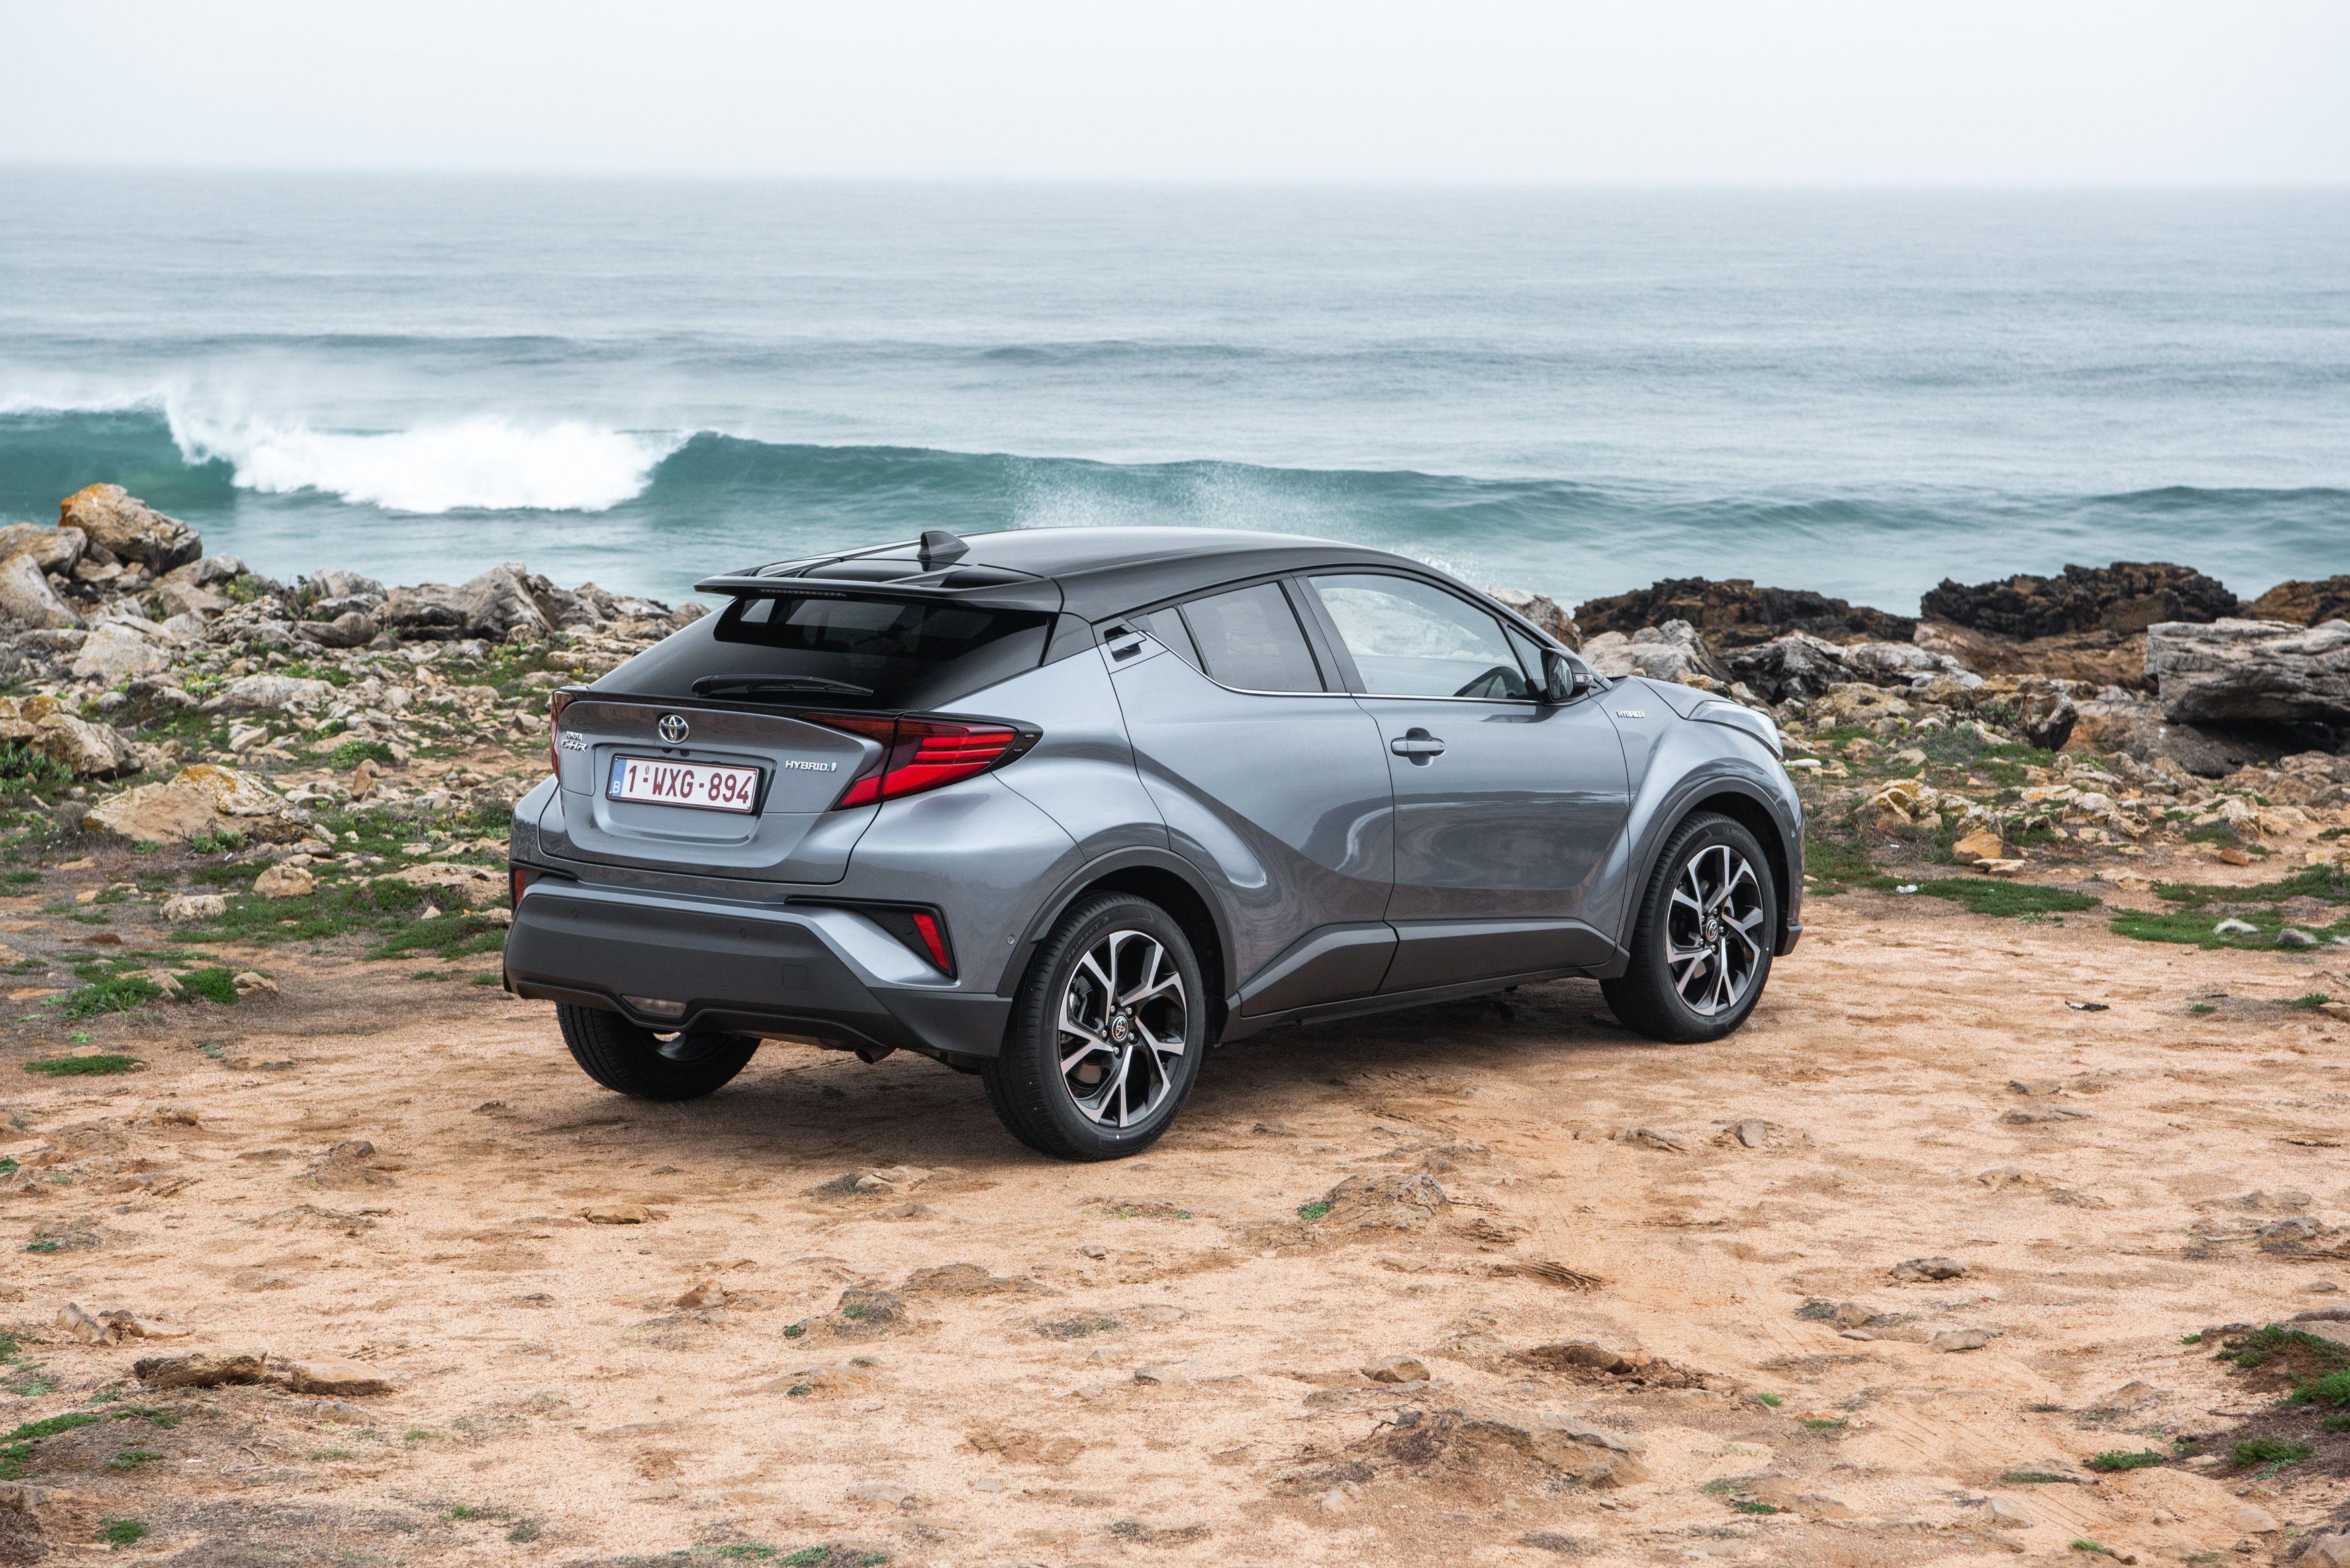 "Avaz" u Portugalu: Vozili smo novu Toyotu C-HR, ko kaže da hybridi nisu zabavni?